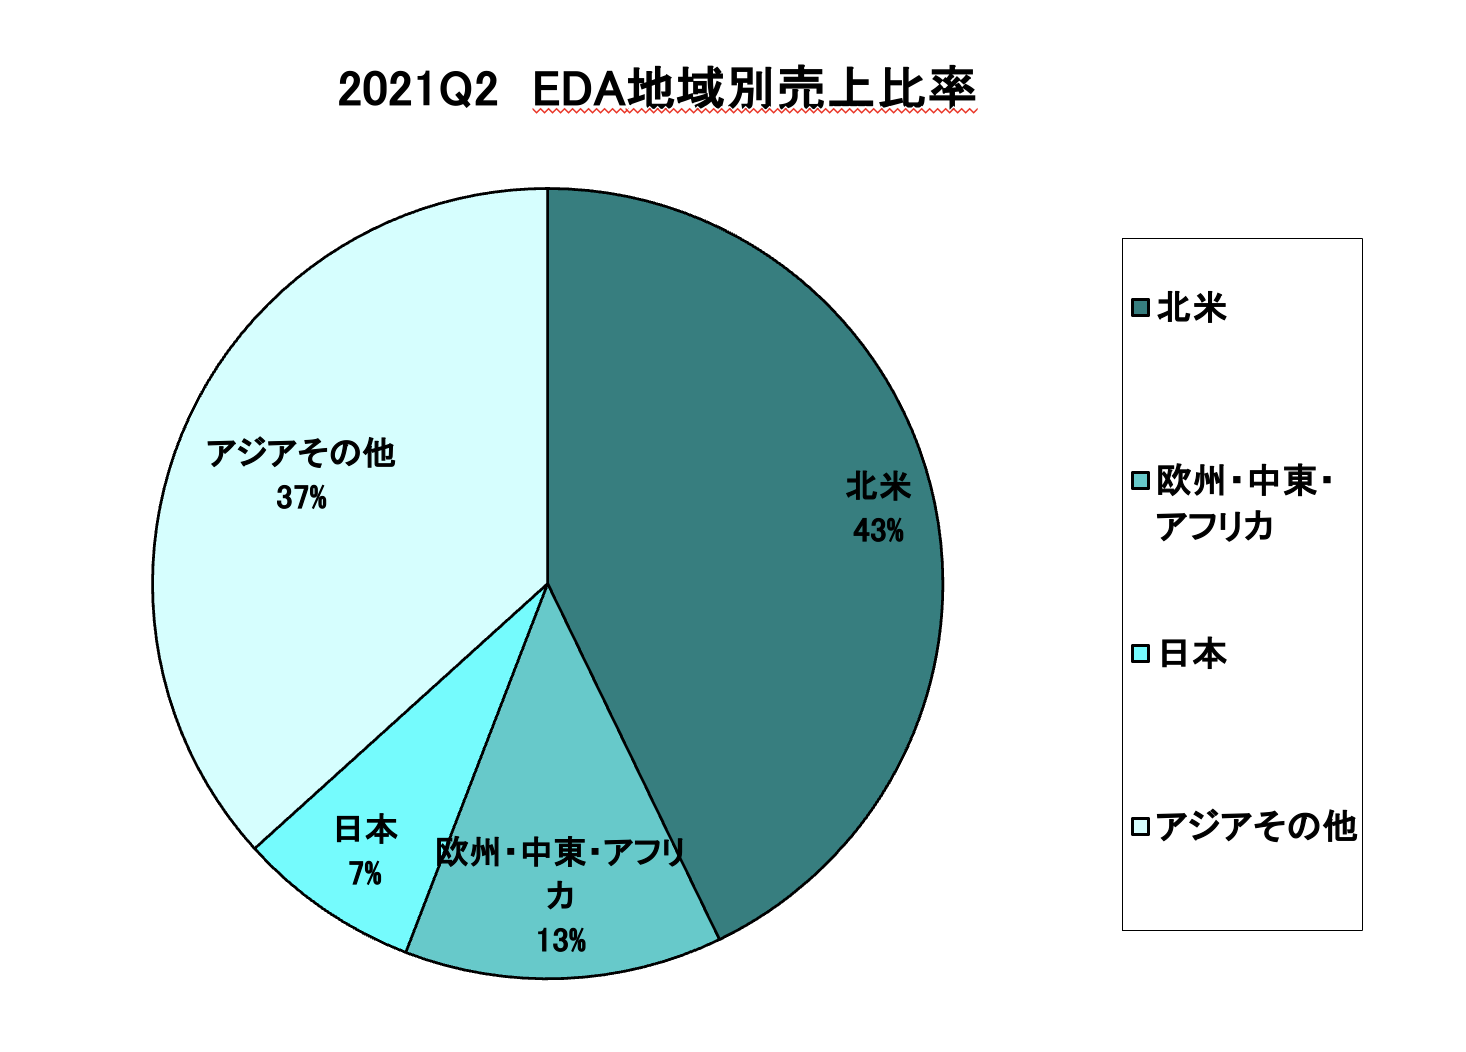 https://www.eda-express.com/%E3%82%B9%E3%82%AF%E3%83%AA%E3%83%BC%E3%83%B3%E3%82%B7%E3%83%A7%E3%83%83%E3%83%88%202021-11-19%2014.25.14.png